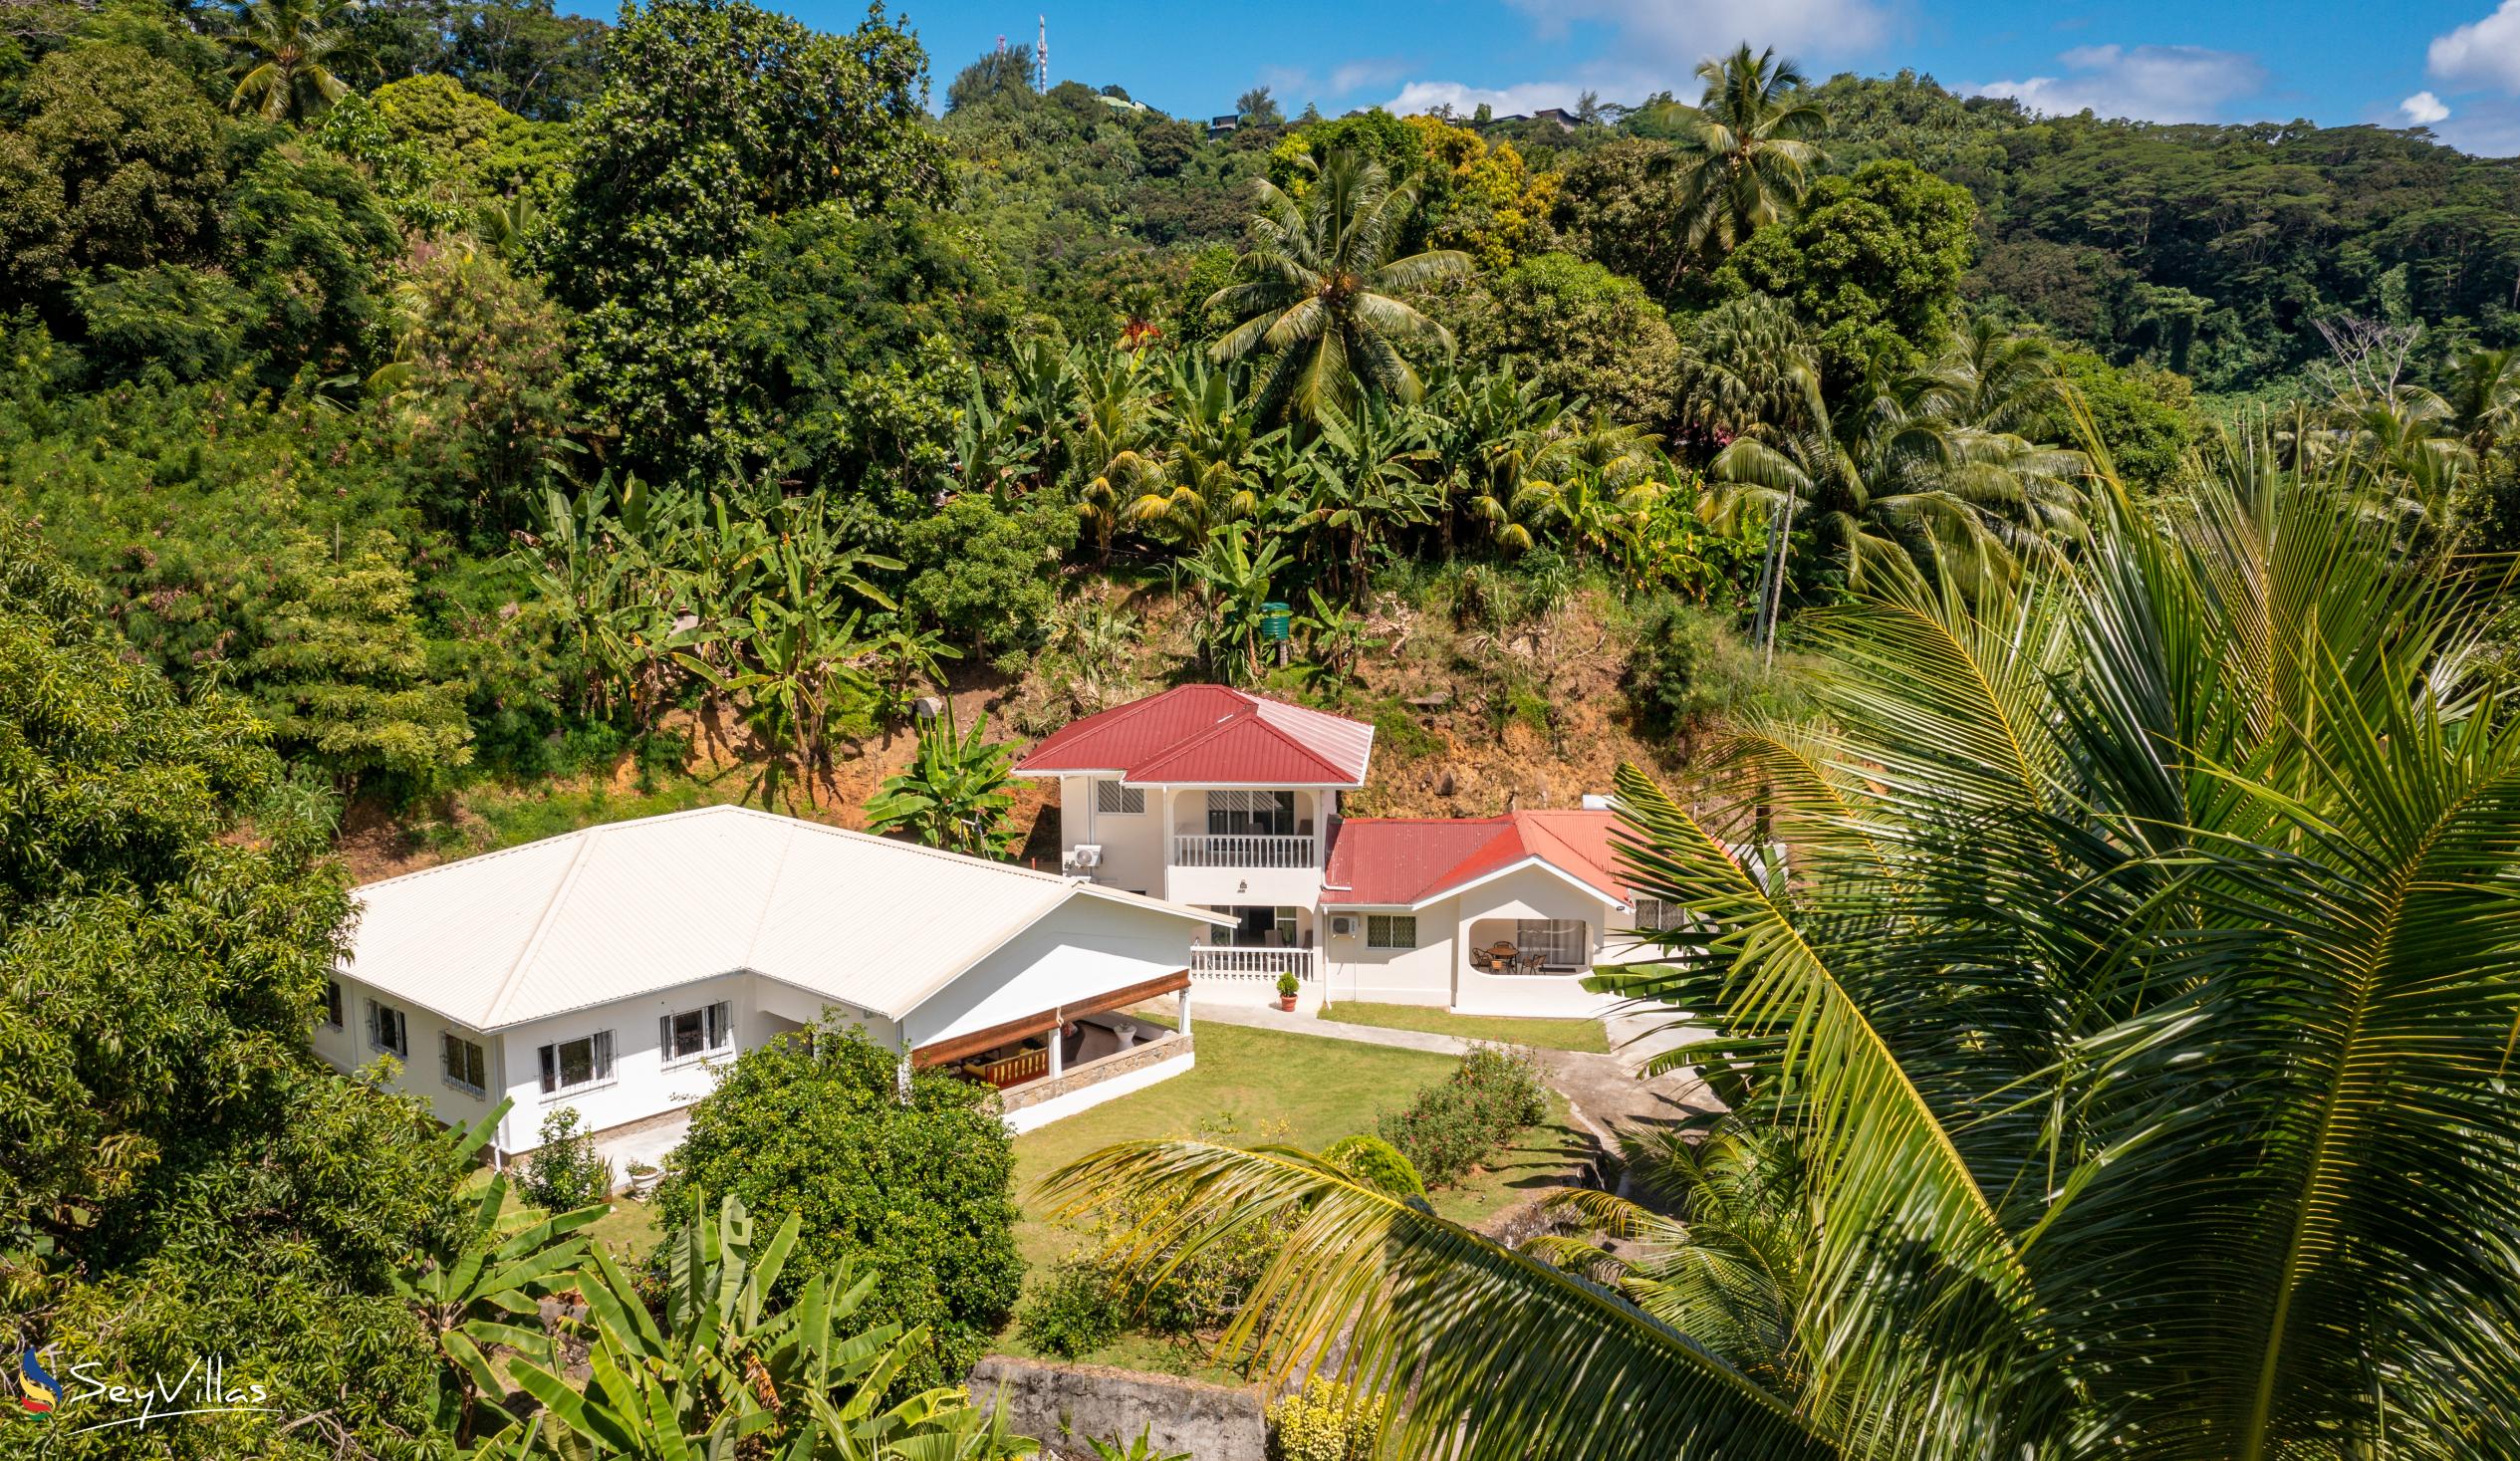 Foto 4: Paul's Residence - Aussenbereich - Mahé (Seychellen)